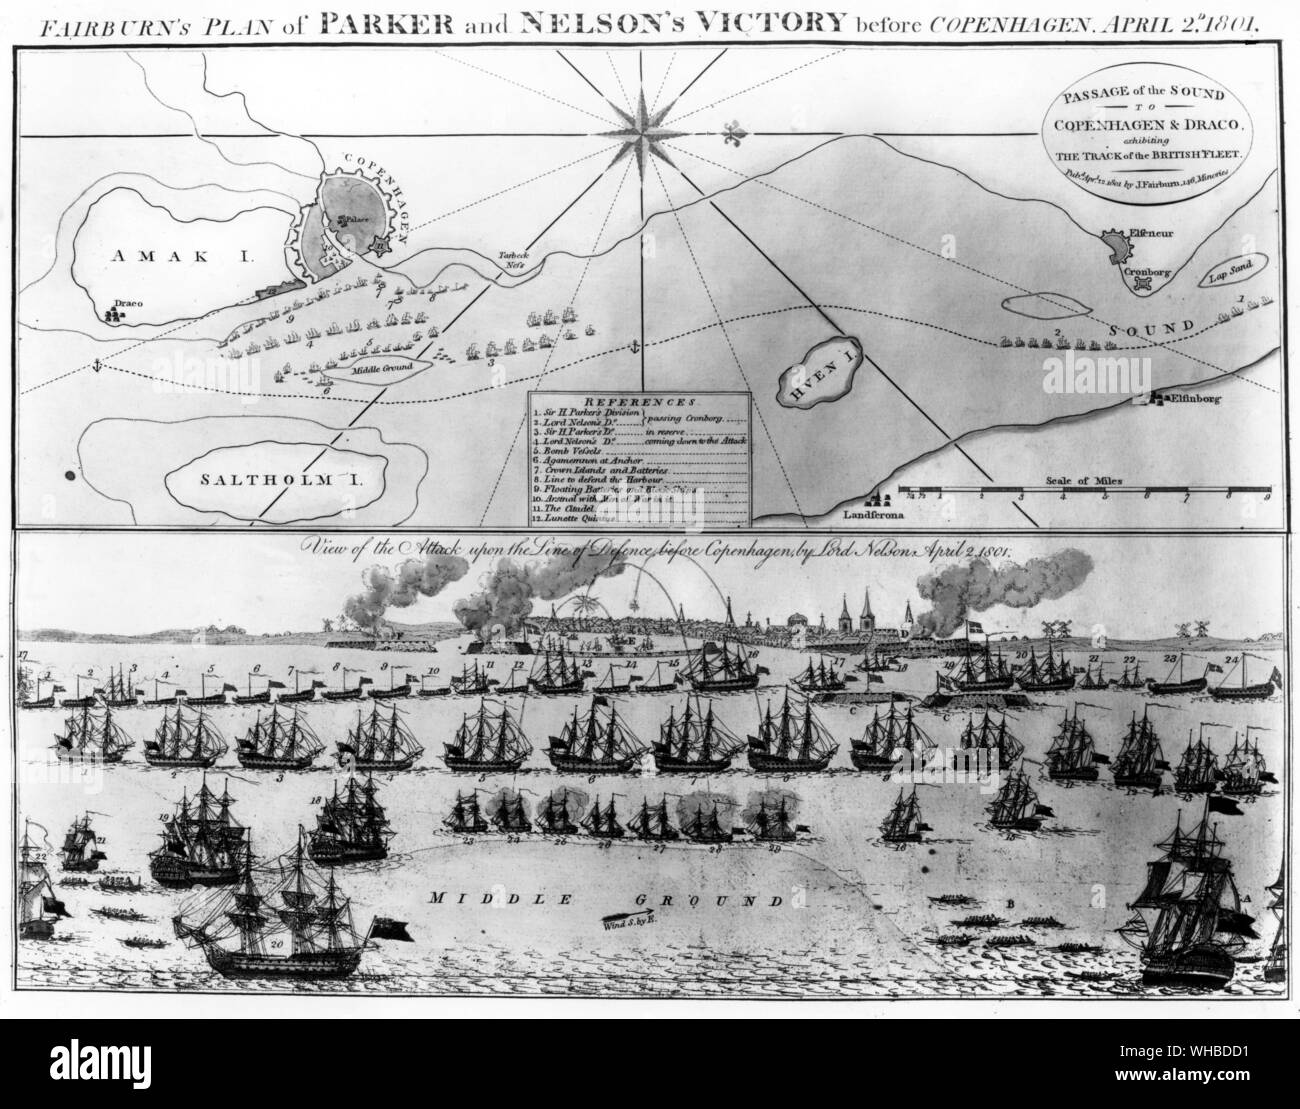 Le plan d'Fairburn Parker et Nelson's Victory avant Copenhague le 2 avril 1801.. Vue de l'attaque contre la ligne de défense avant Copenhague par Lord Nelson . Banque D'Images